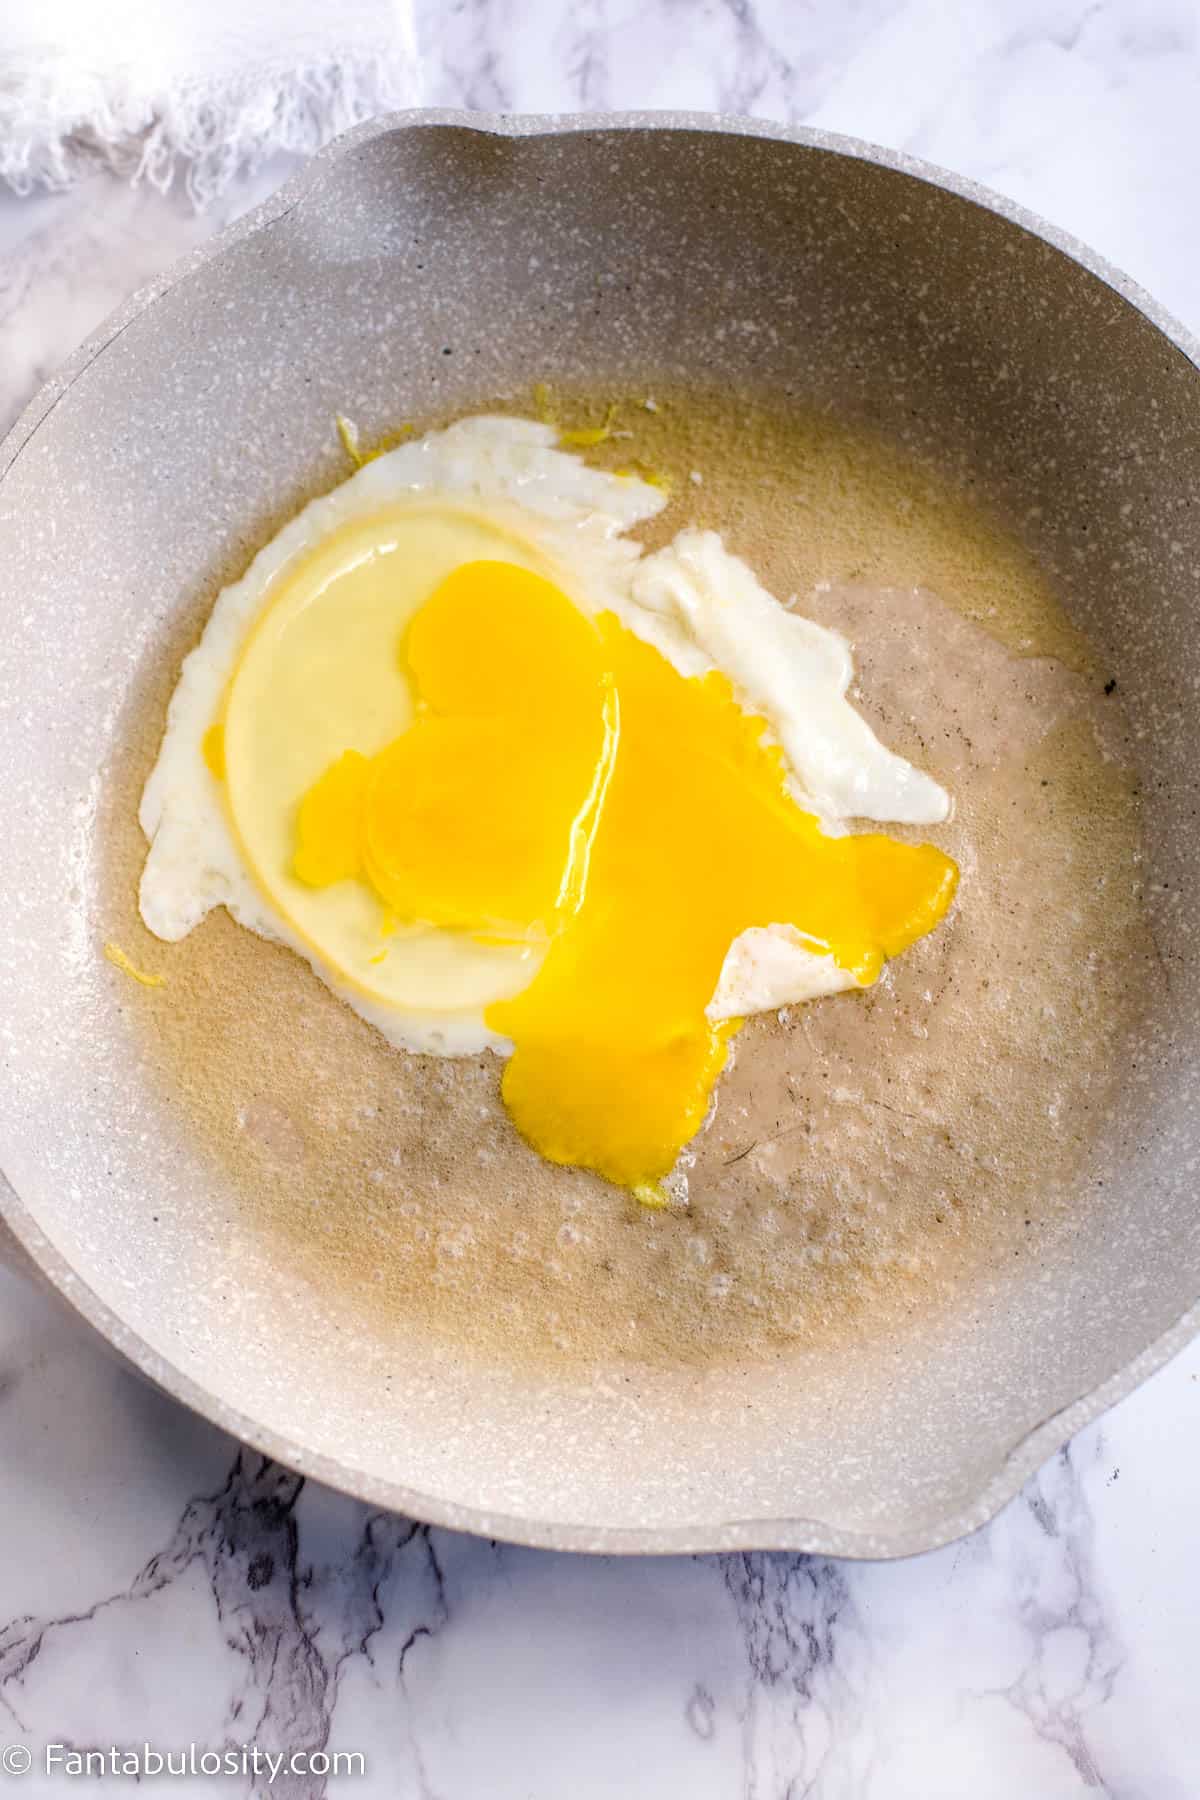 Cracked egg in skillet